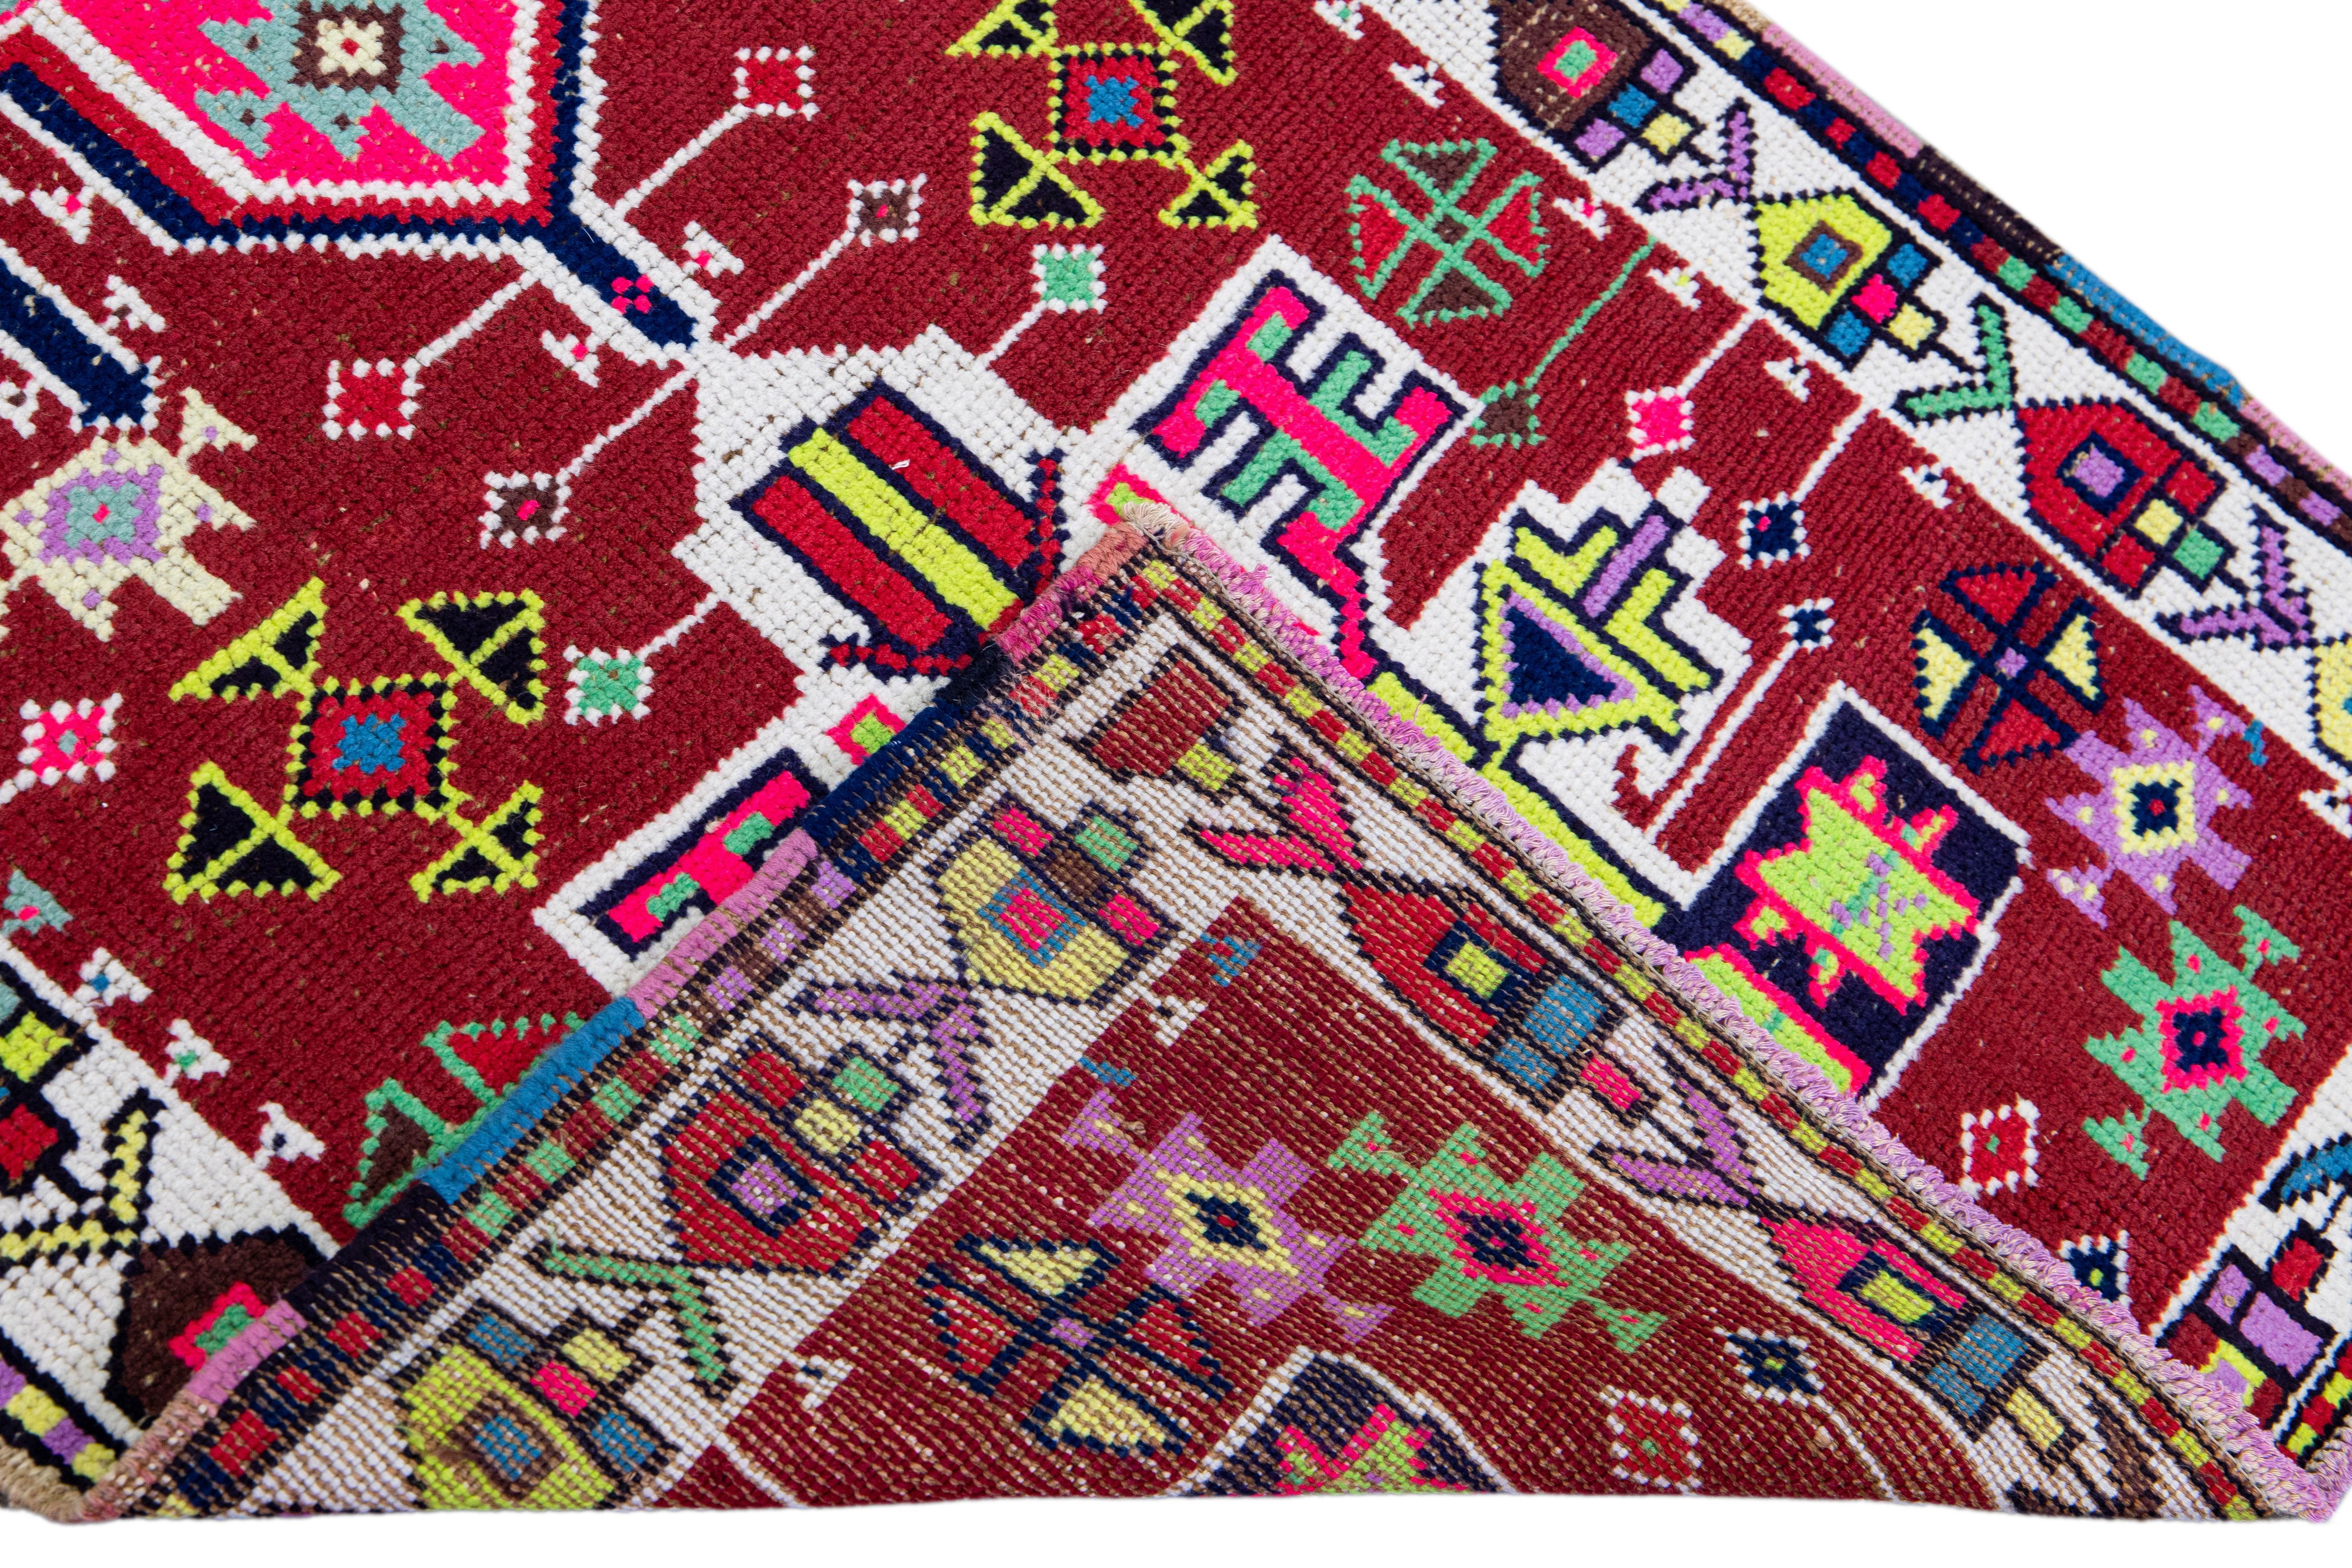 Schöner alter türkischer handgeknüpfter Wollteppich mit rotem Feld. Dieser Teppich hat einen weiß gestalteten Rahmen und mehrfarbige Akzente in einem herrlichen geometrischen Stammesmuster.

Dieser Teppich misst: 2'8